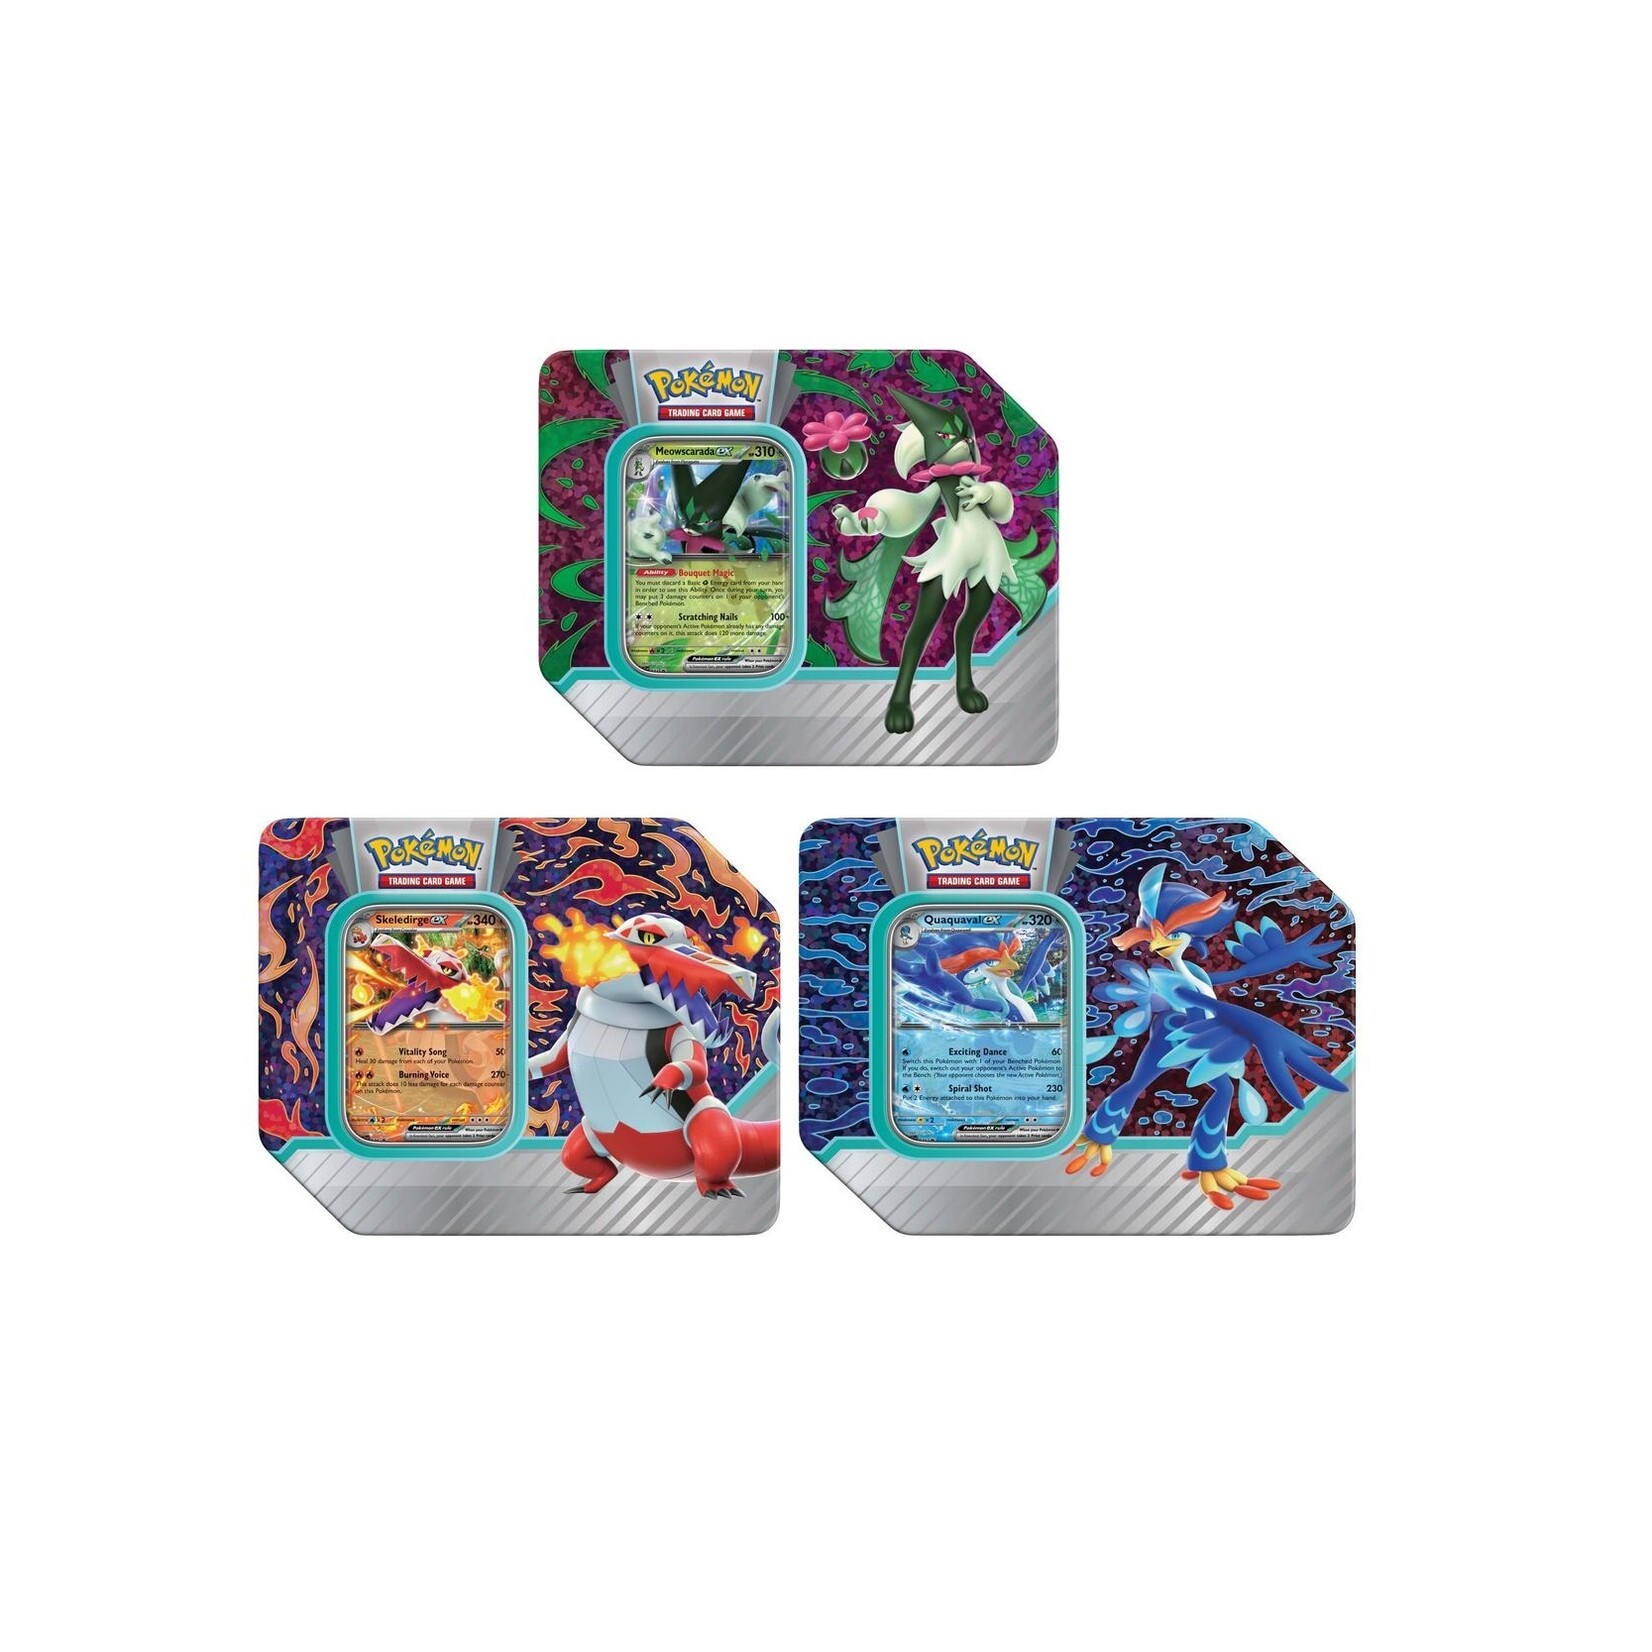 The Pokémon Company Pokémon - Paldea partner tin